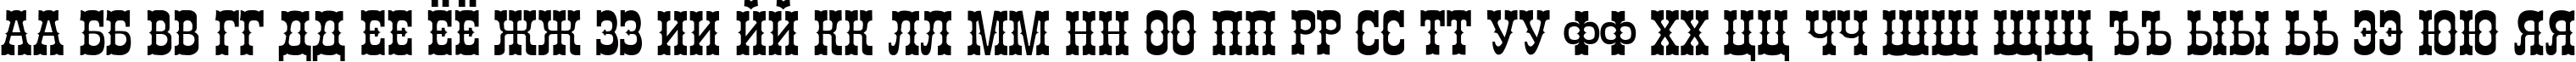 Пример написания русского алфавита шрифтом Chibola